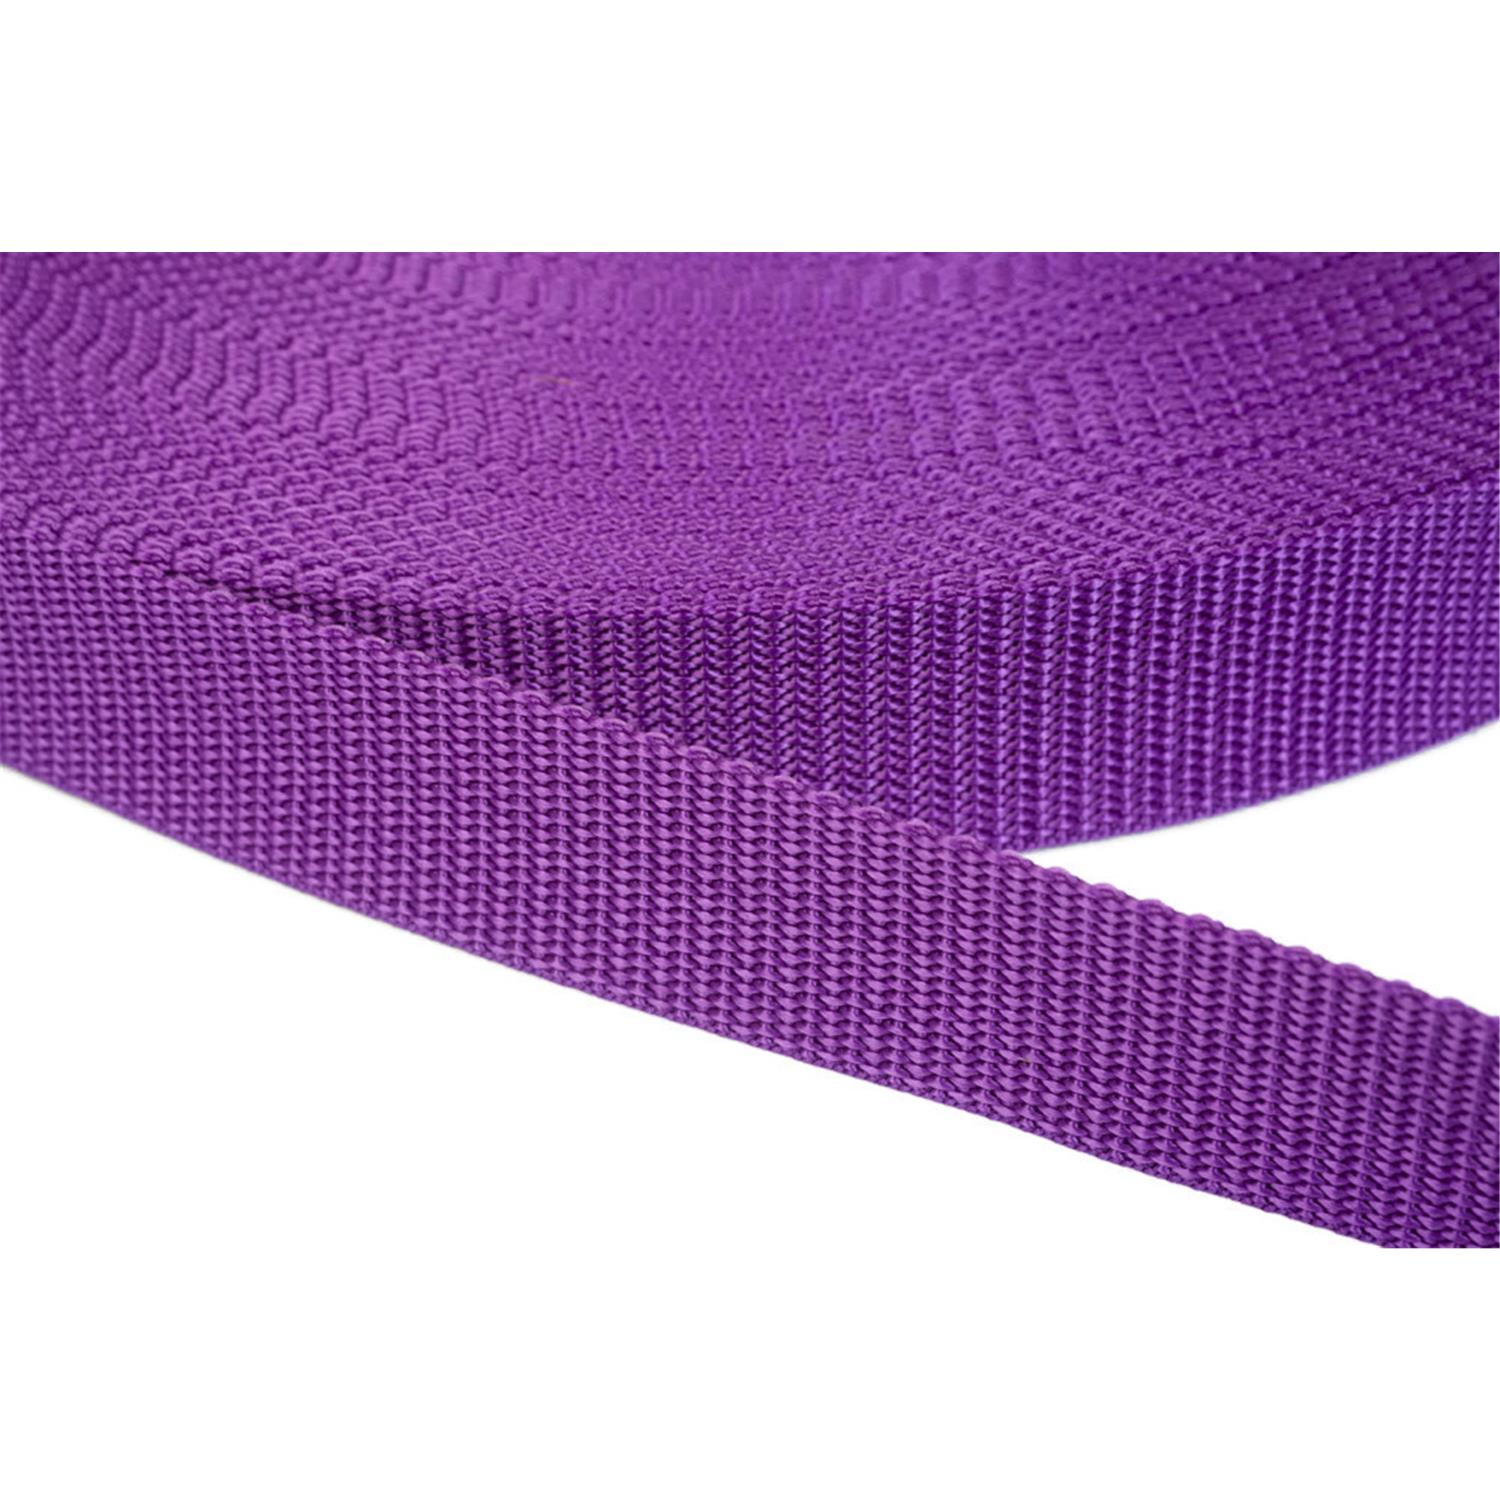 Gurtband 20mm breit aus Polypropylen in 41 Farben 24 - lila 06 Meter